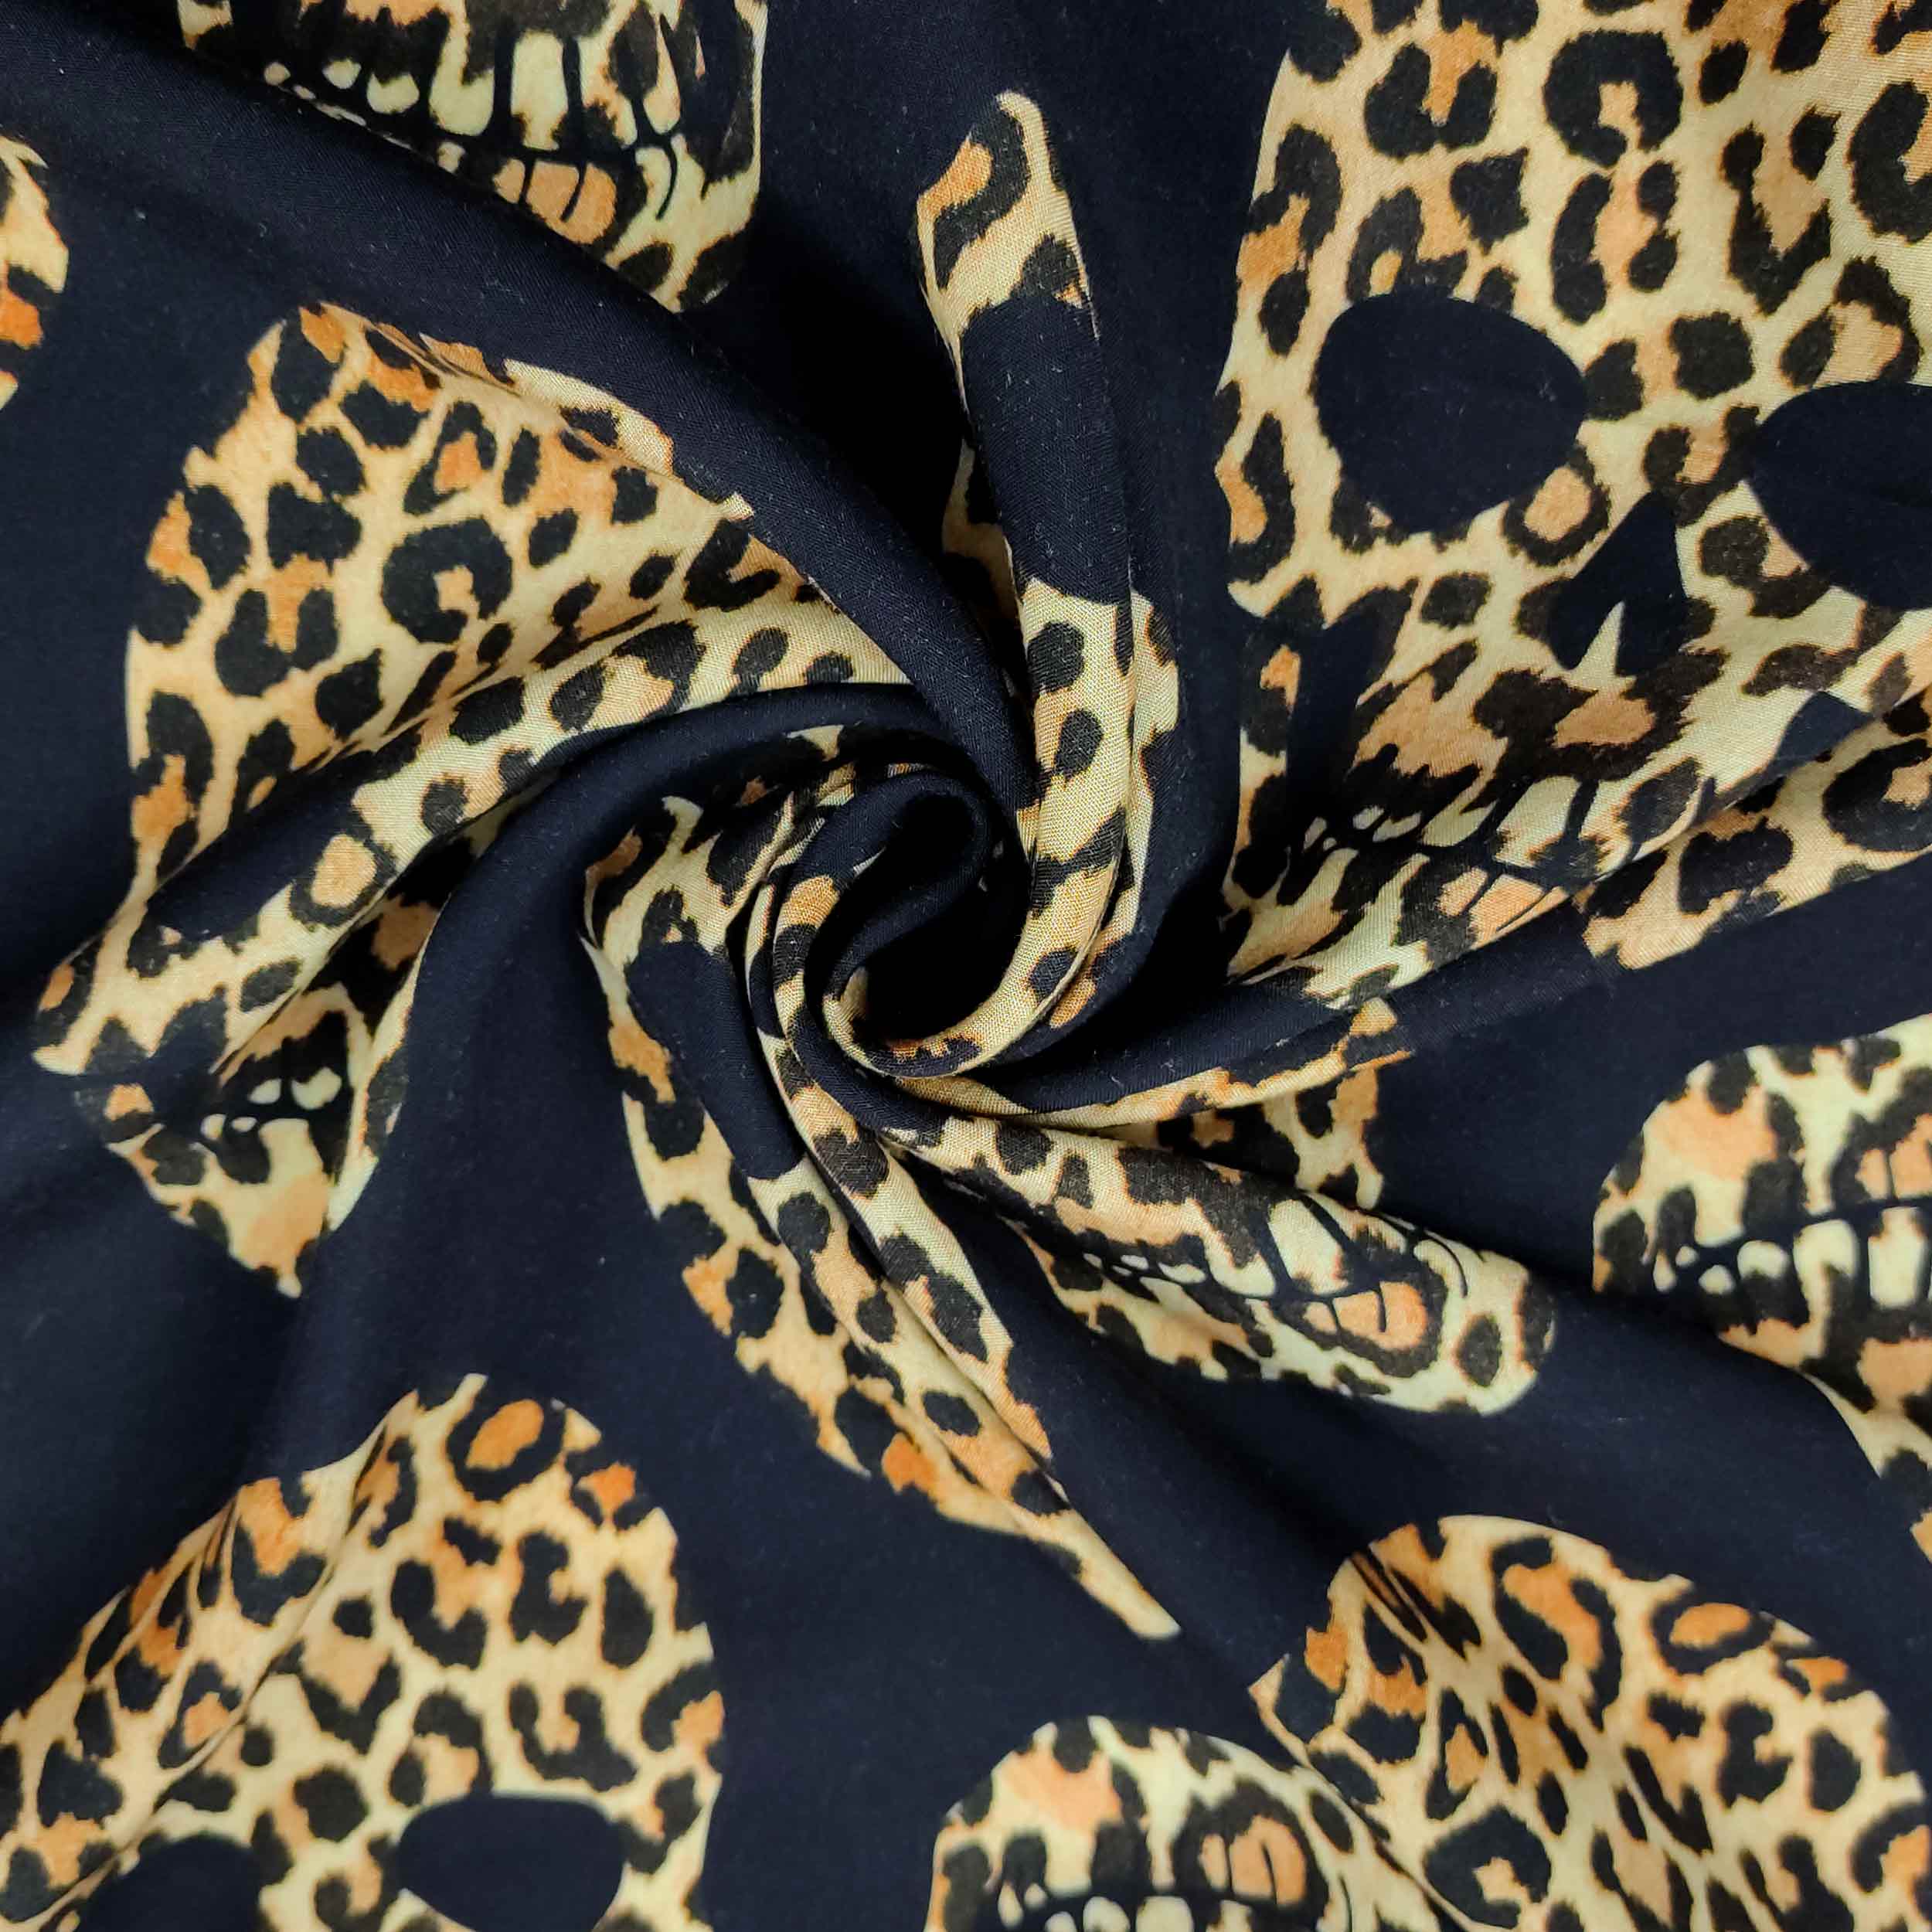 tessuto in seta e viscosa con teschi leopardati